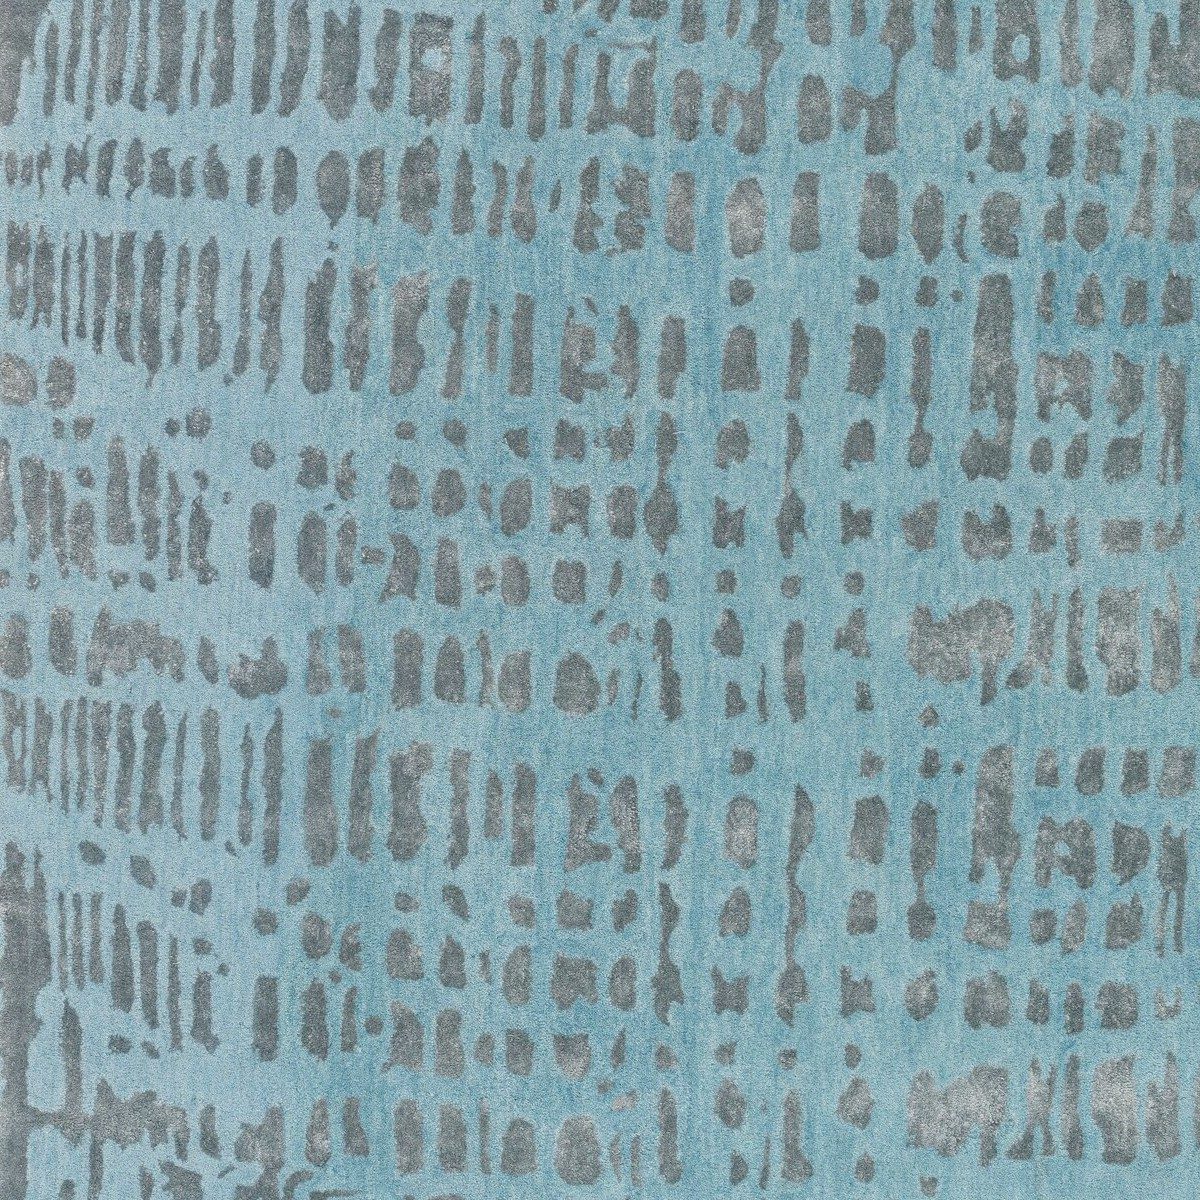 JOOP! Croco Teppich mit Muster in Blau in Detailansicht.